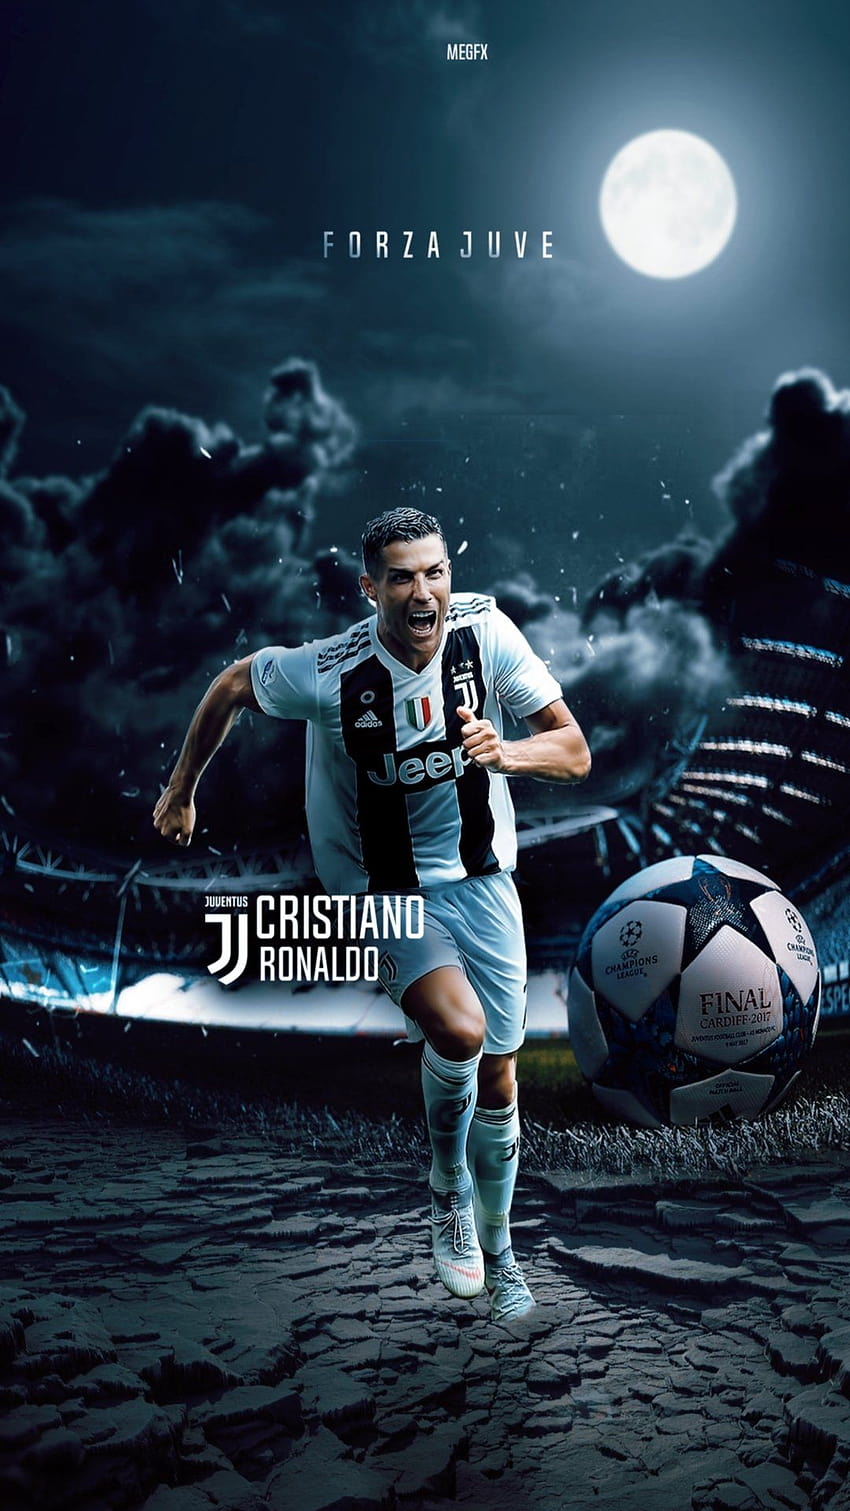 Ronaldo đã chính thức chuyển đến Juventus và cùng với đội bóng mới, anh chàng tiếp tục thể hiện sức mạnh của mình. Tại sao bạn không trang trí màn hình của mình bằng hình nền Ronaldo Juventus đầy đam mê?